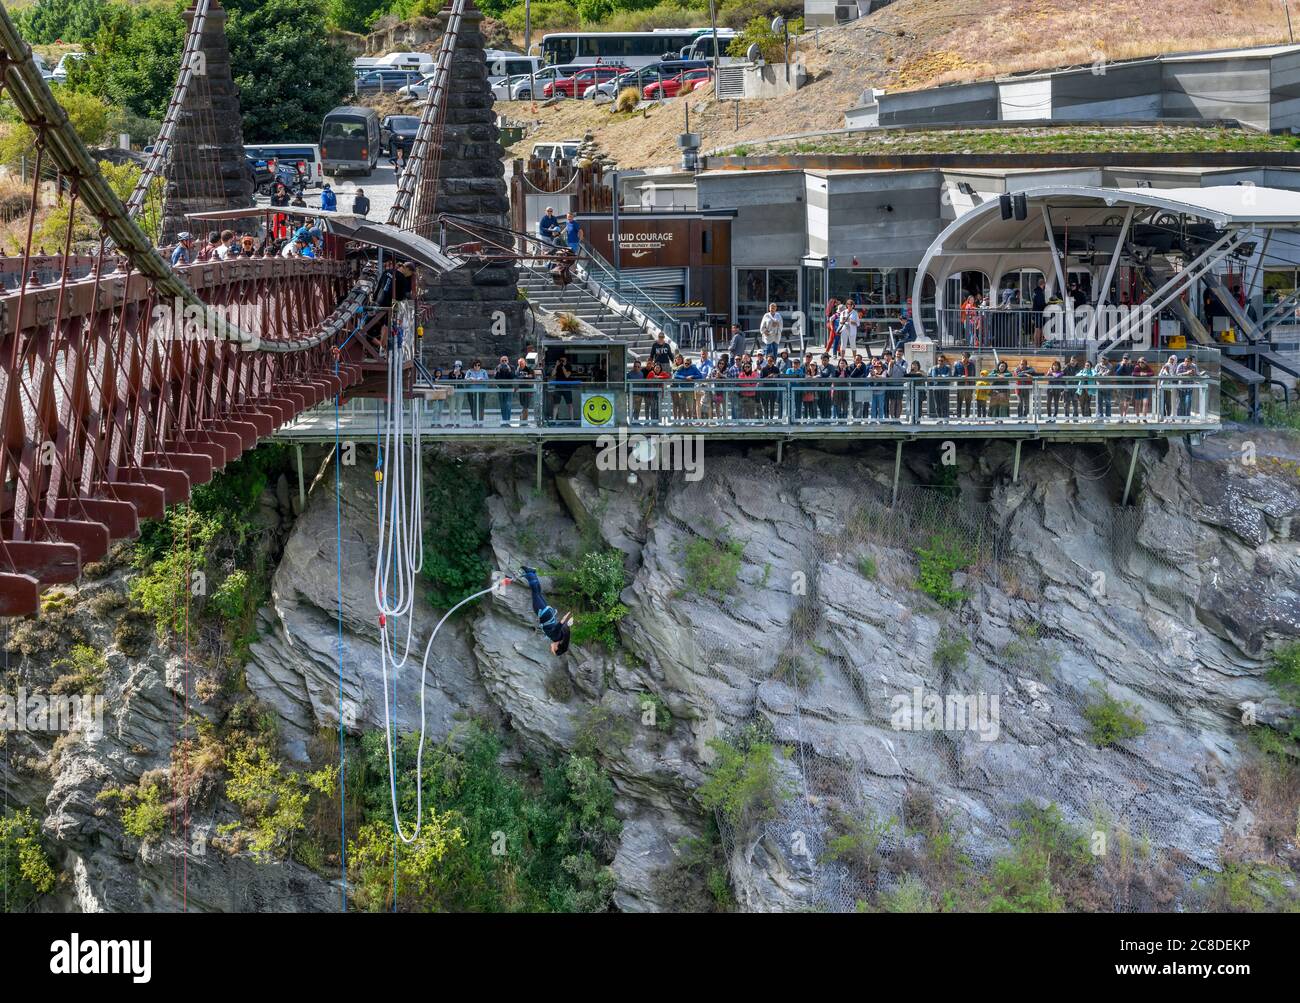 Il centro Bungy AJ Hacket presso il ponte sospeso della Gola di Kawarau, Otago, Nuova Zelanda. Il ponte è stato il primo sito commerciale al mondo bungee jumping. Foto Stock